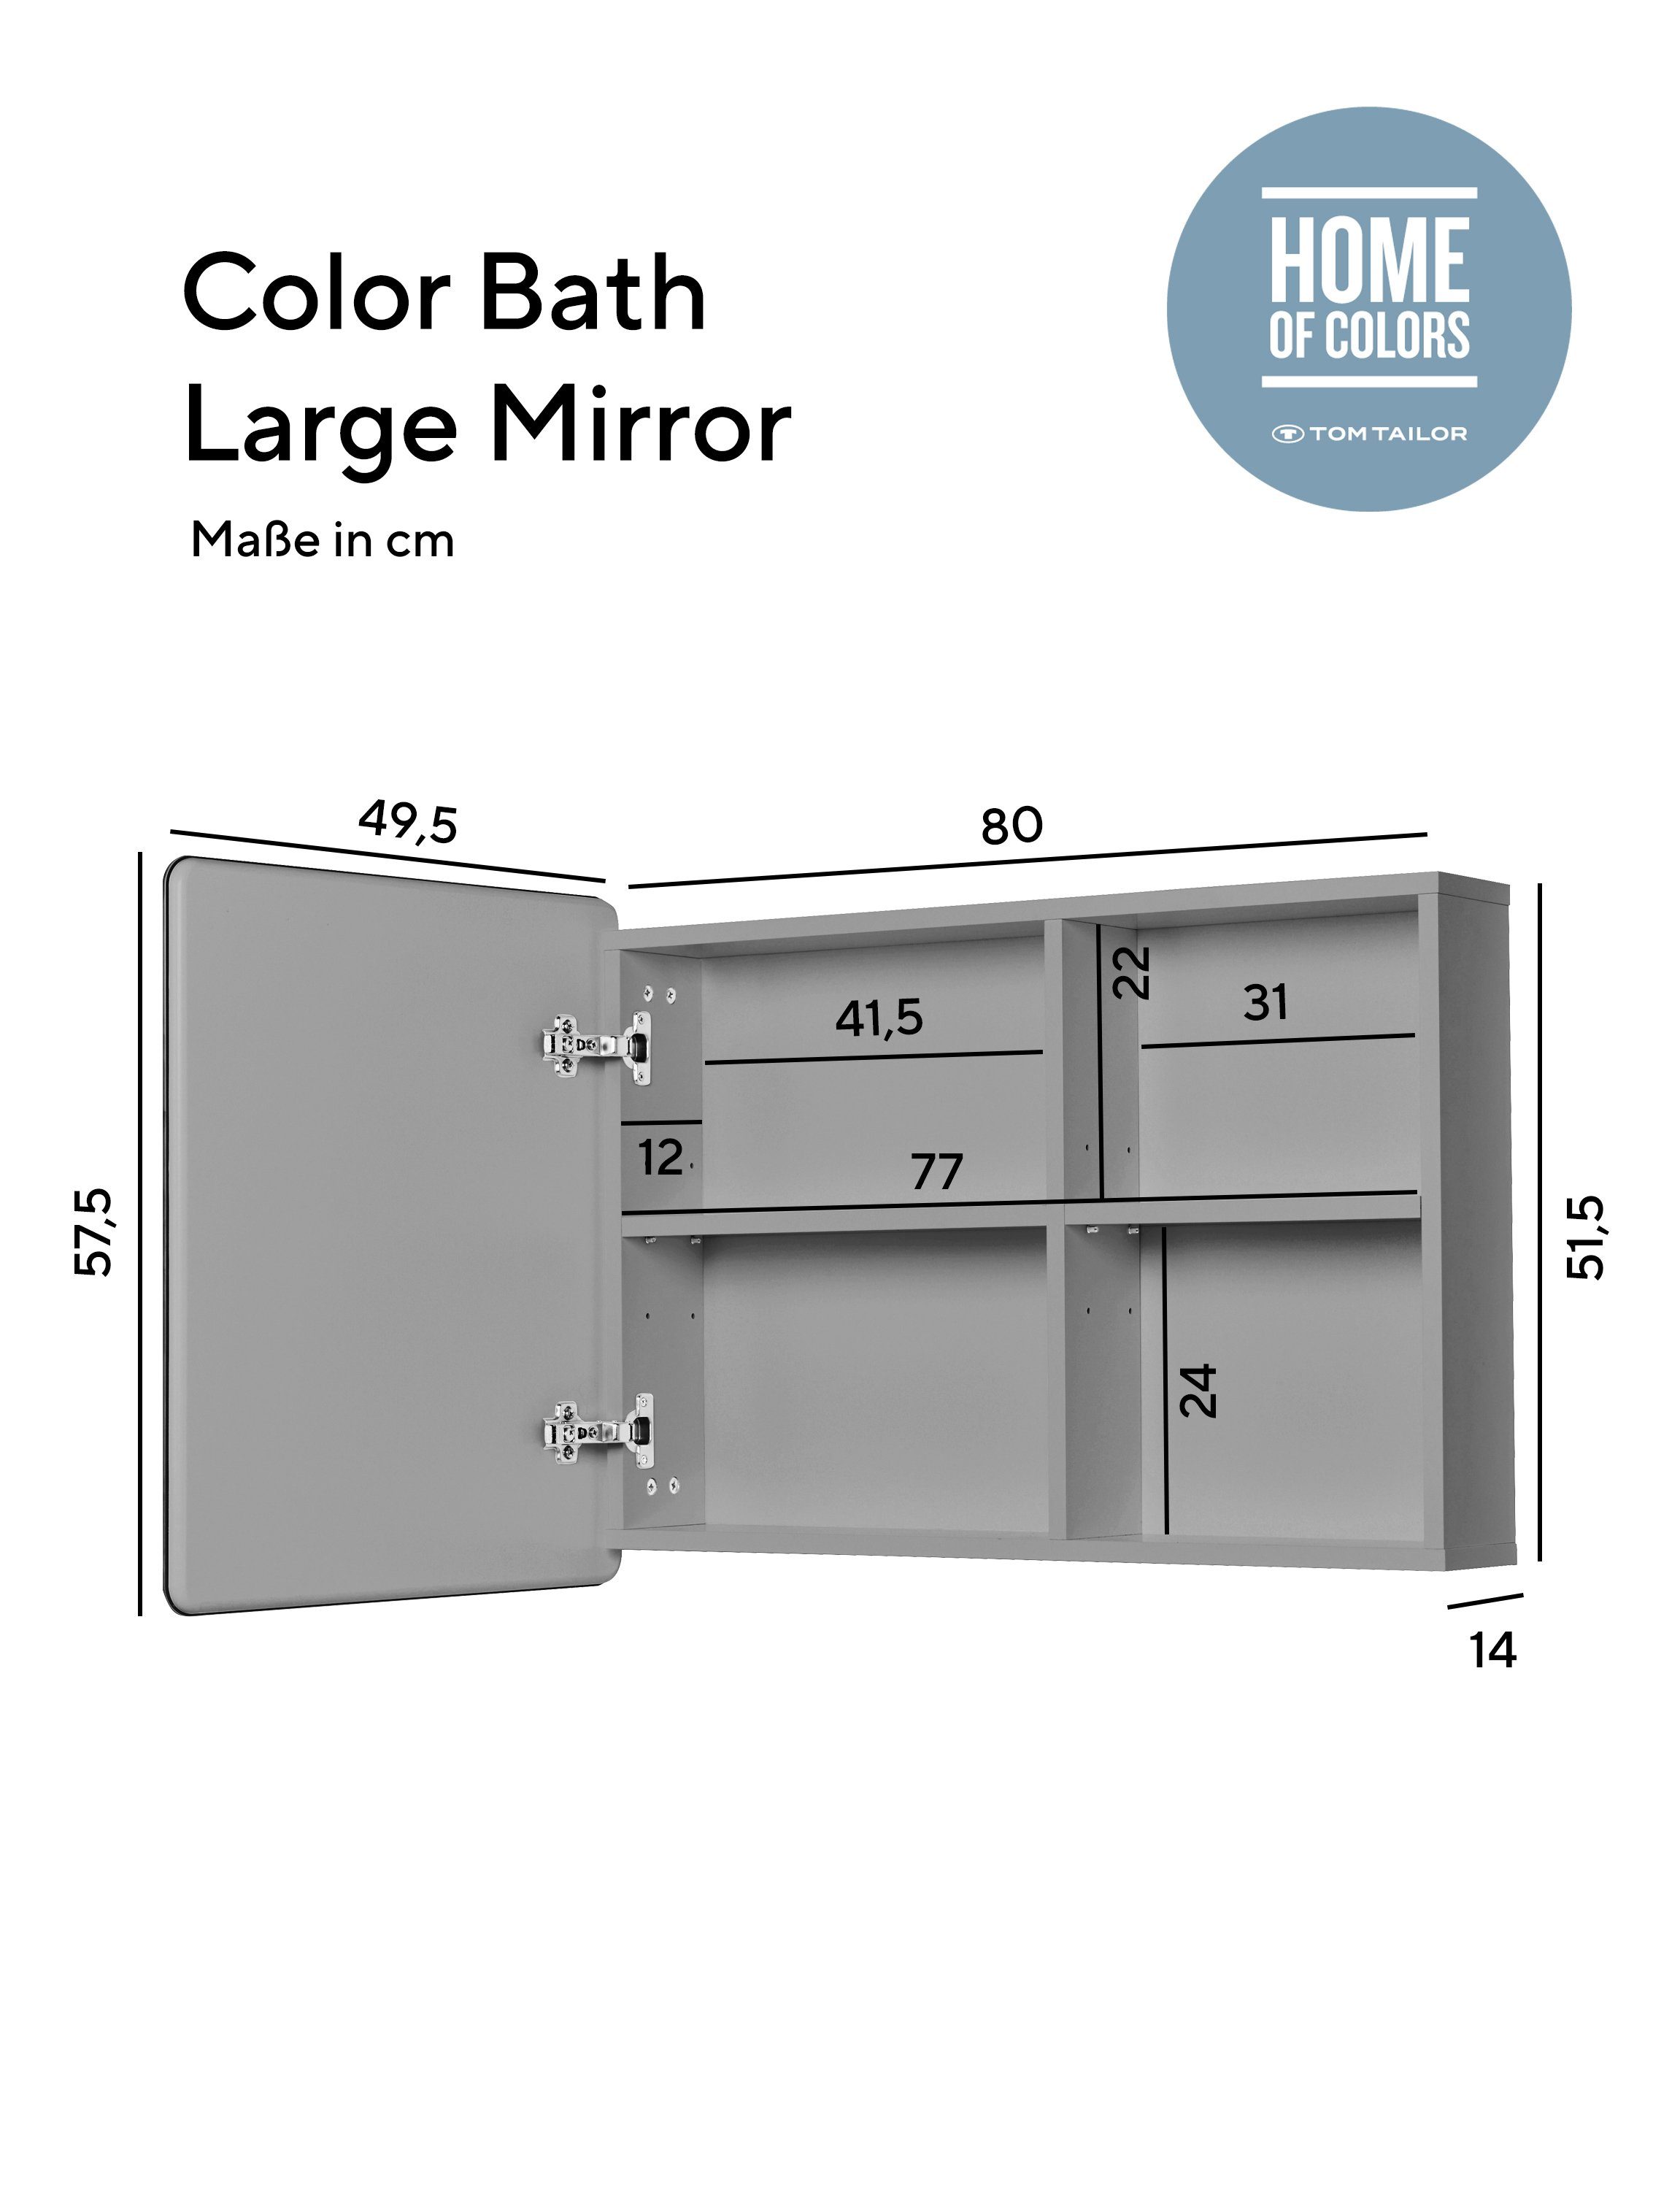 Mirror MDF sage076 Ecken, mit - in vielen BATH COLOR attraktiven mit HOME Badspiegel großer Large TOM Badspiegel lackiert Stauraum, TAILOR gerundeten Farben